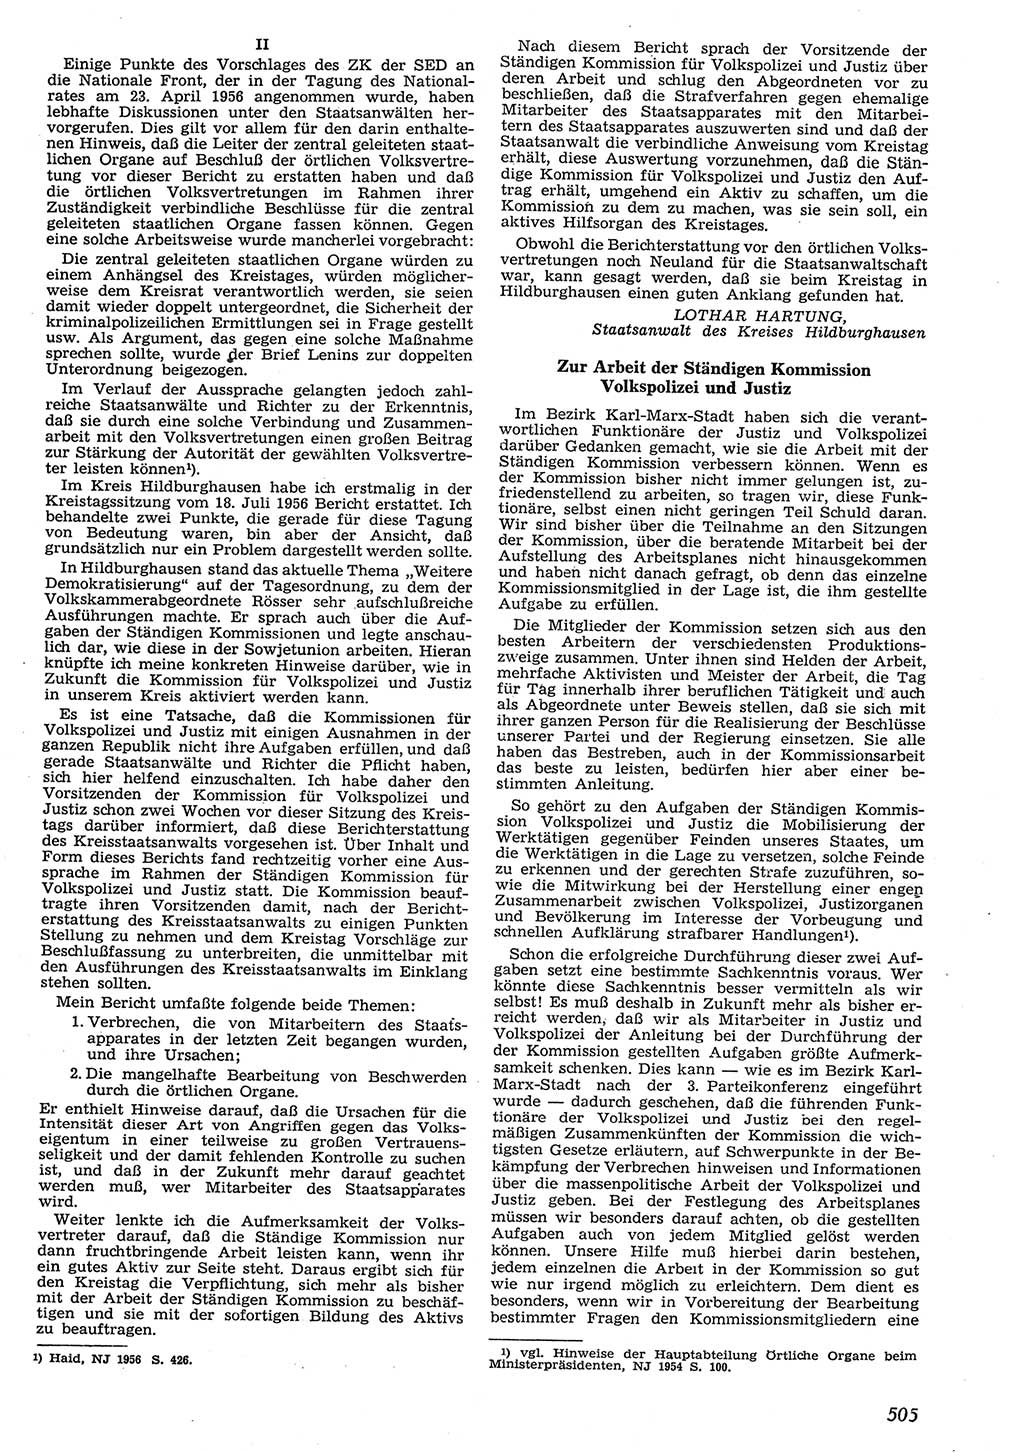 Neue Justiz (NJ), Zeitschrift für Recht und Rechtswissenschaft [Deutsche Demokratische Republik (DDR)], 10. Jahrgang 1956, Seite 505 (NJ DDR 1956, S. 505)